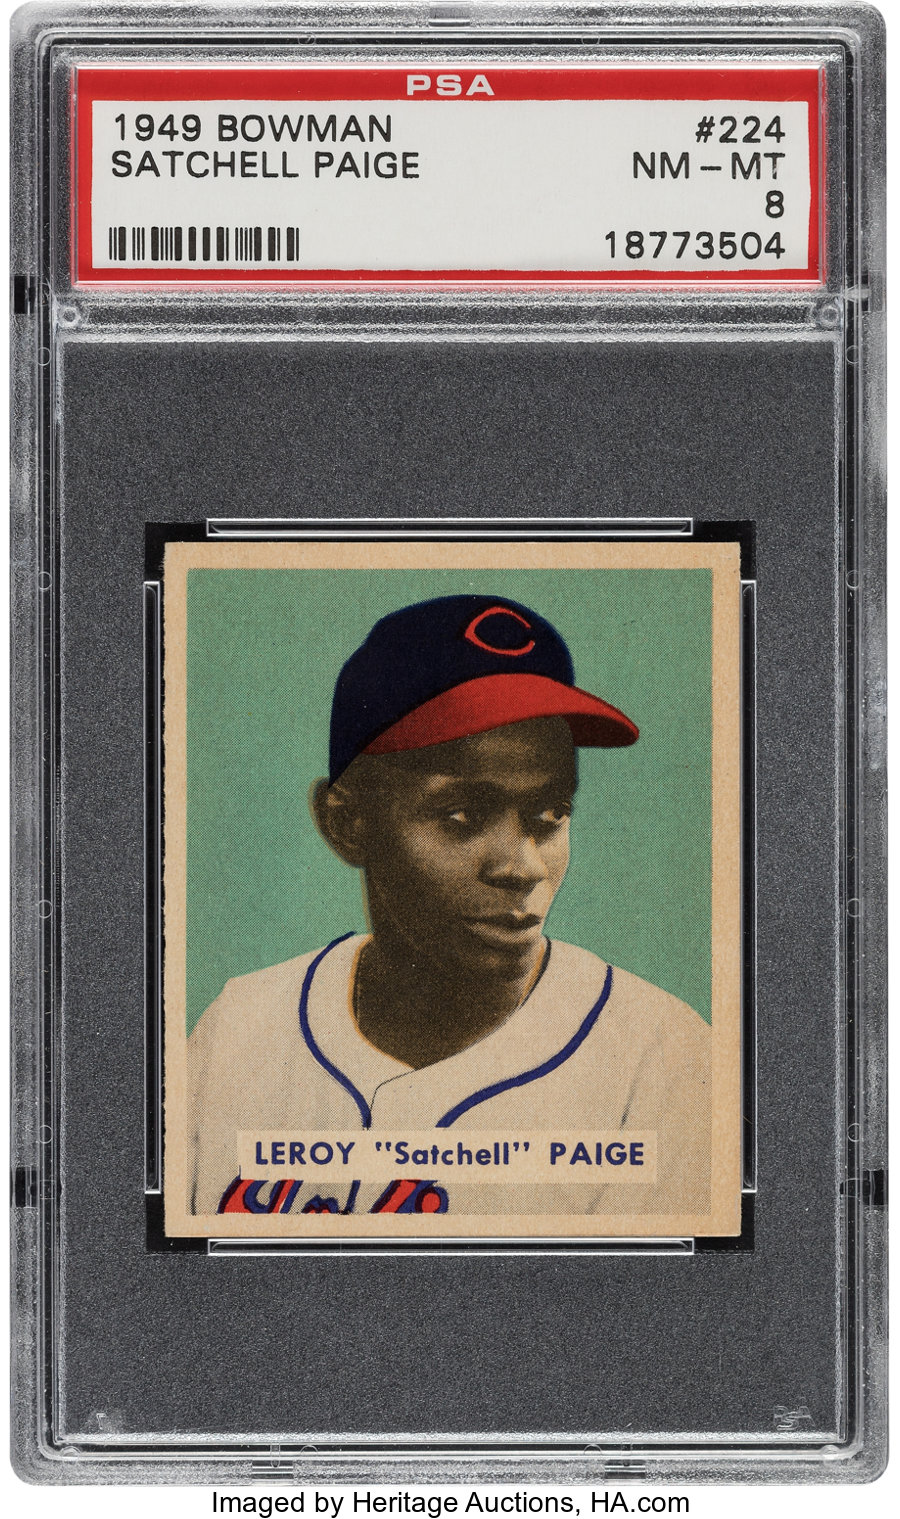 1949 Bowman Satchell Paige #224 PSA NM-MT 8